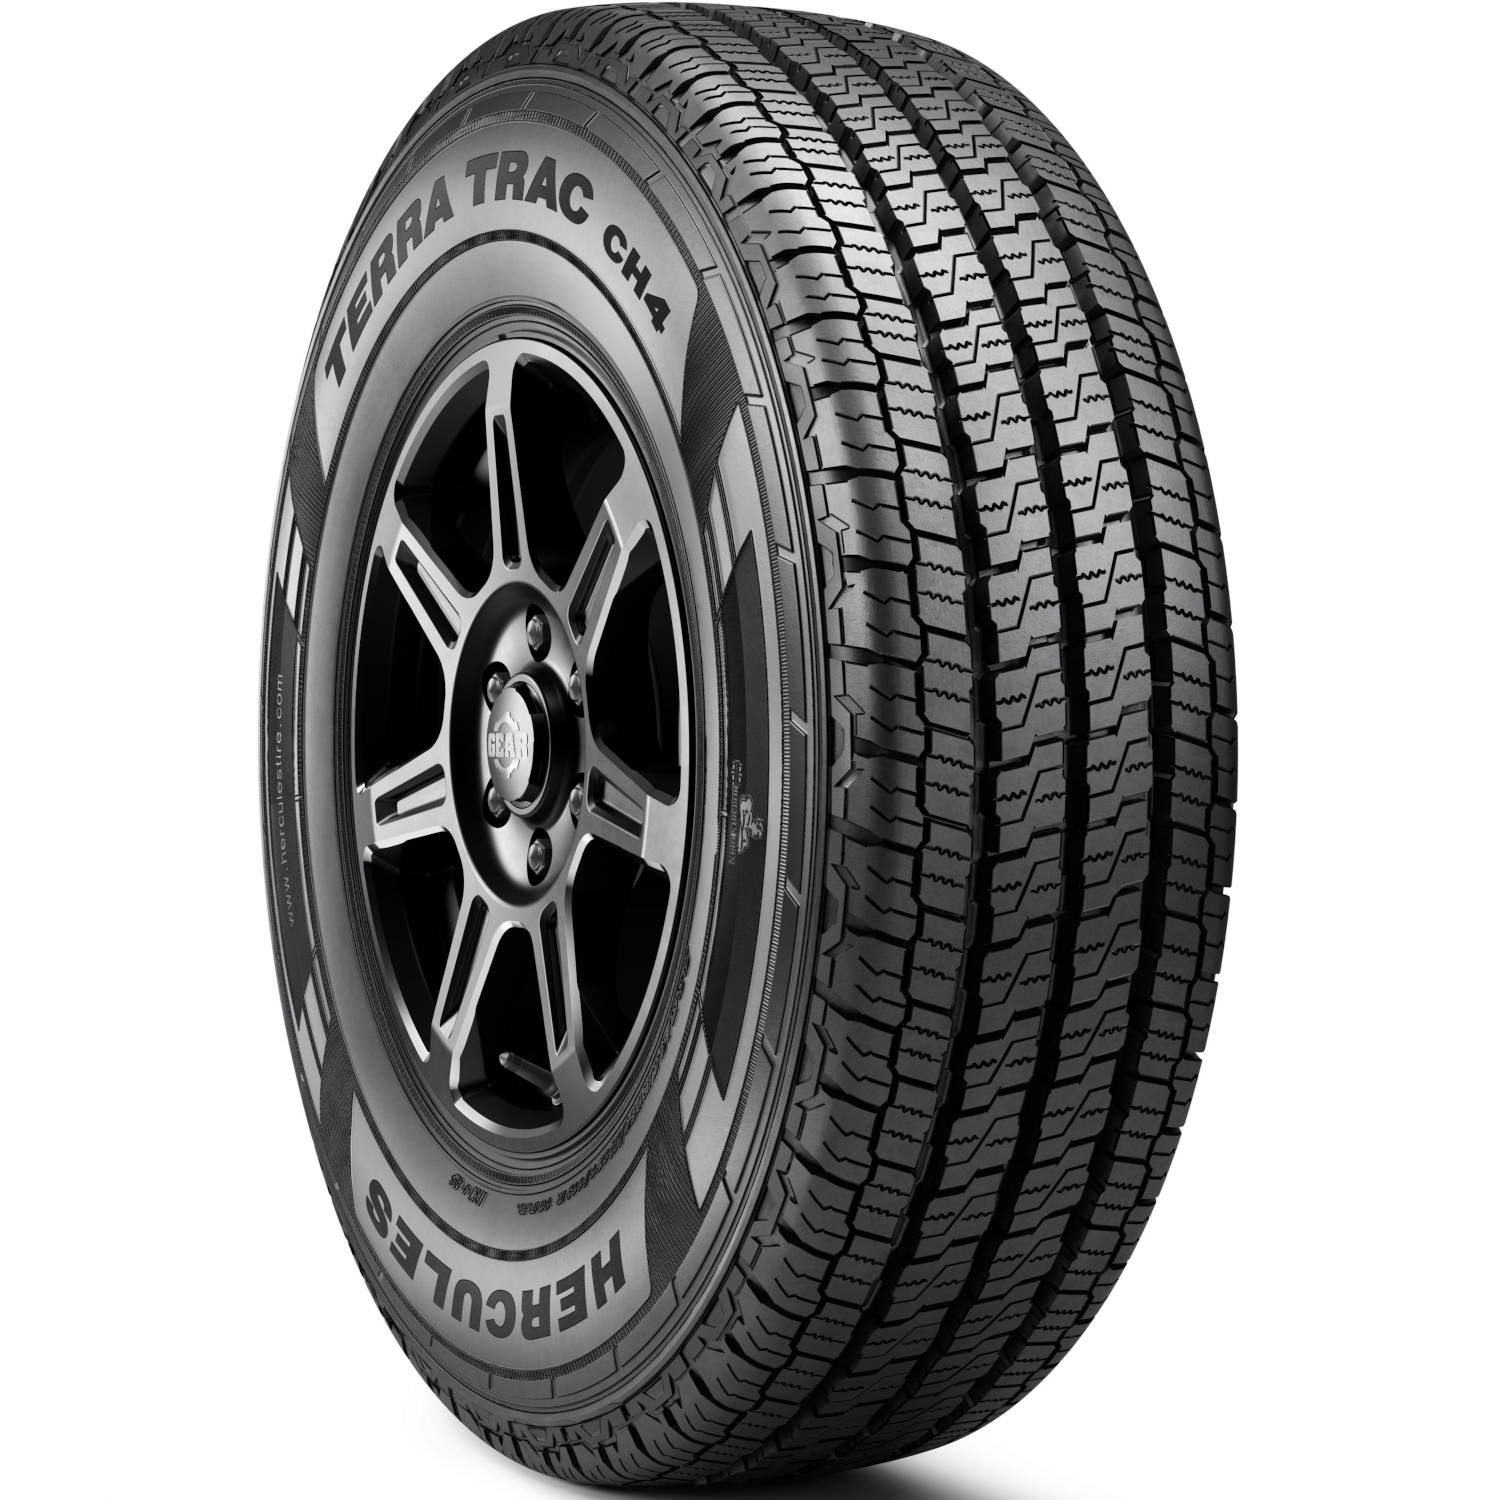 HERCULES TERRA TRAC CH4 235/65R16C (28X9.3R 16) Tires